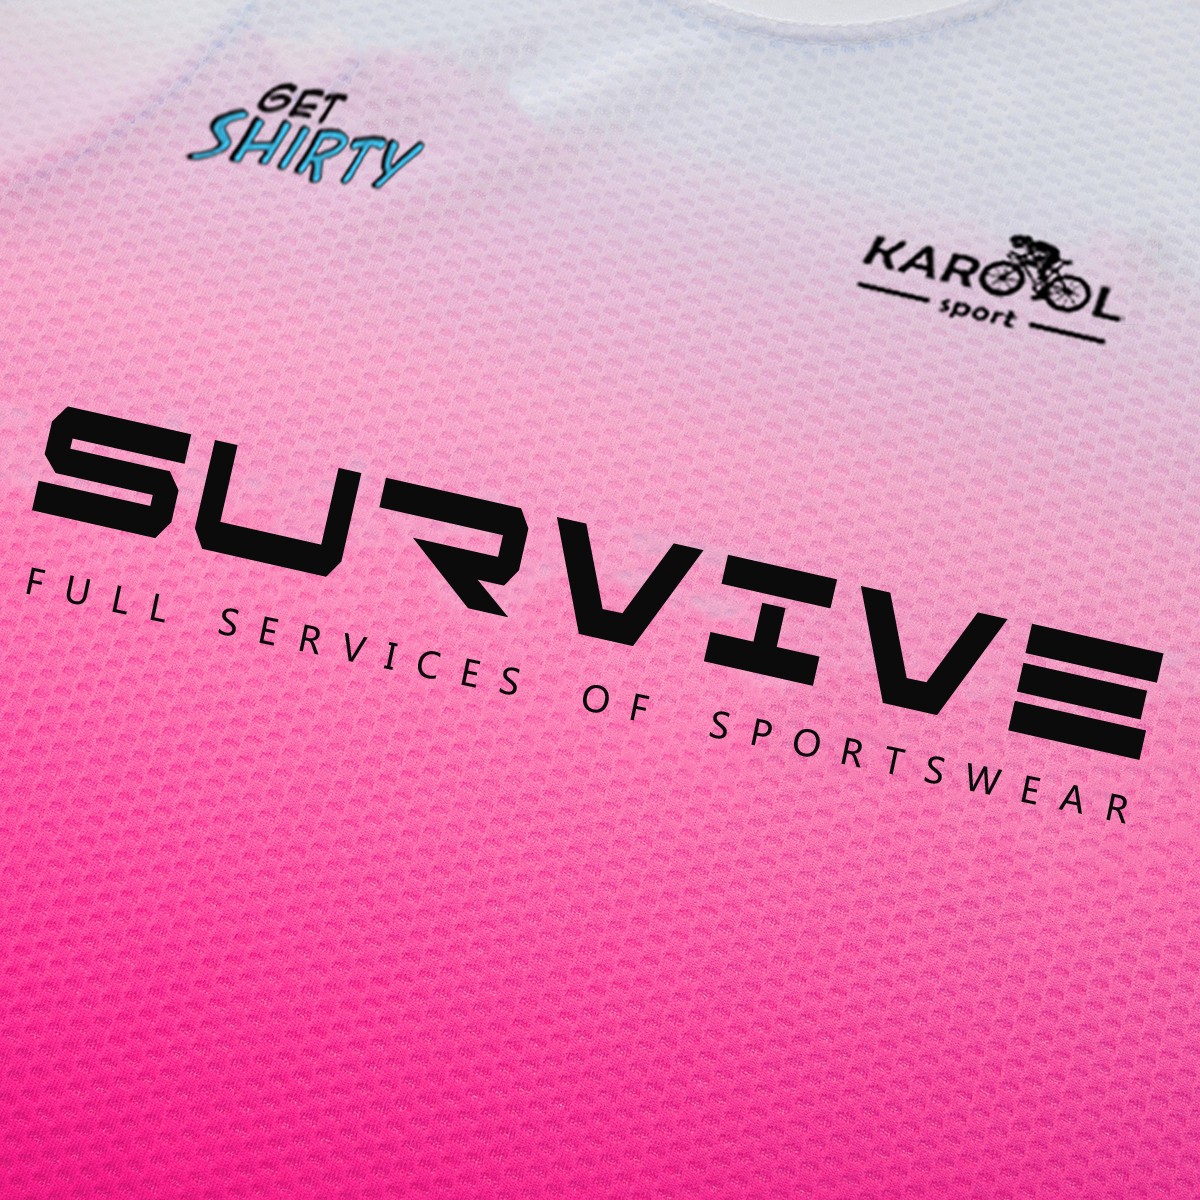 Karool elite running t shirt supplier for sporting-6